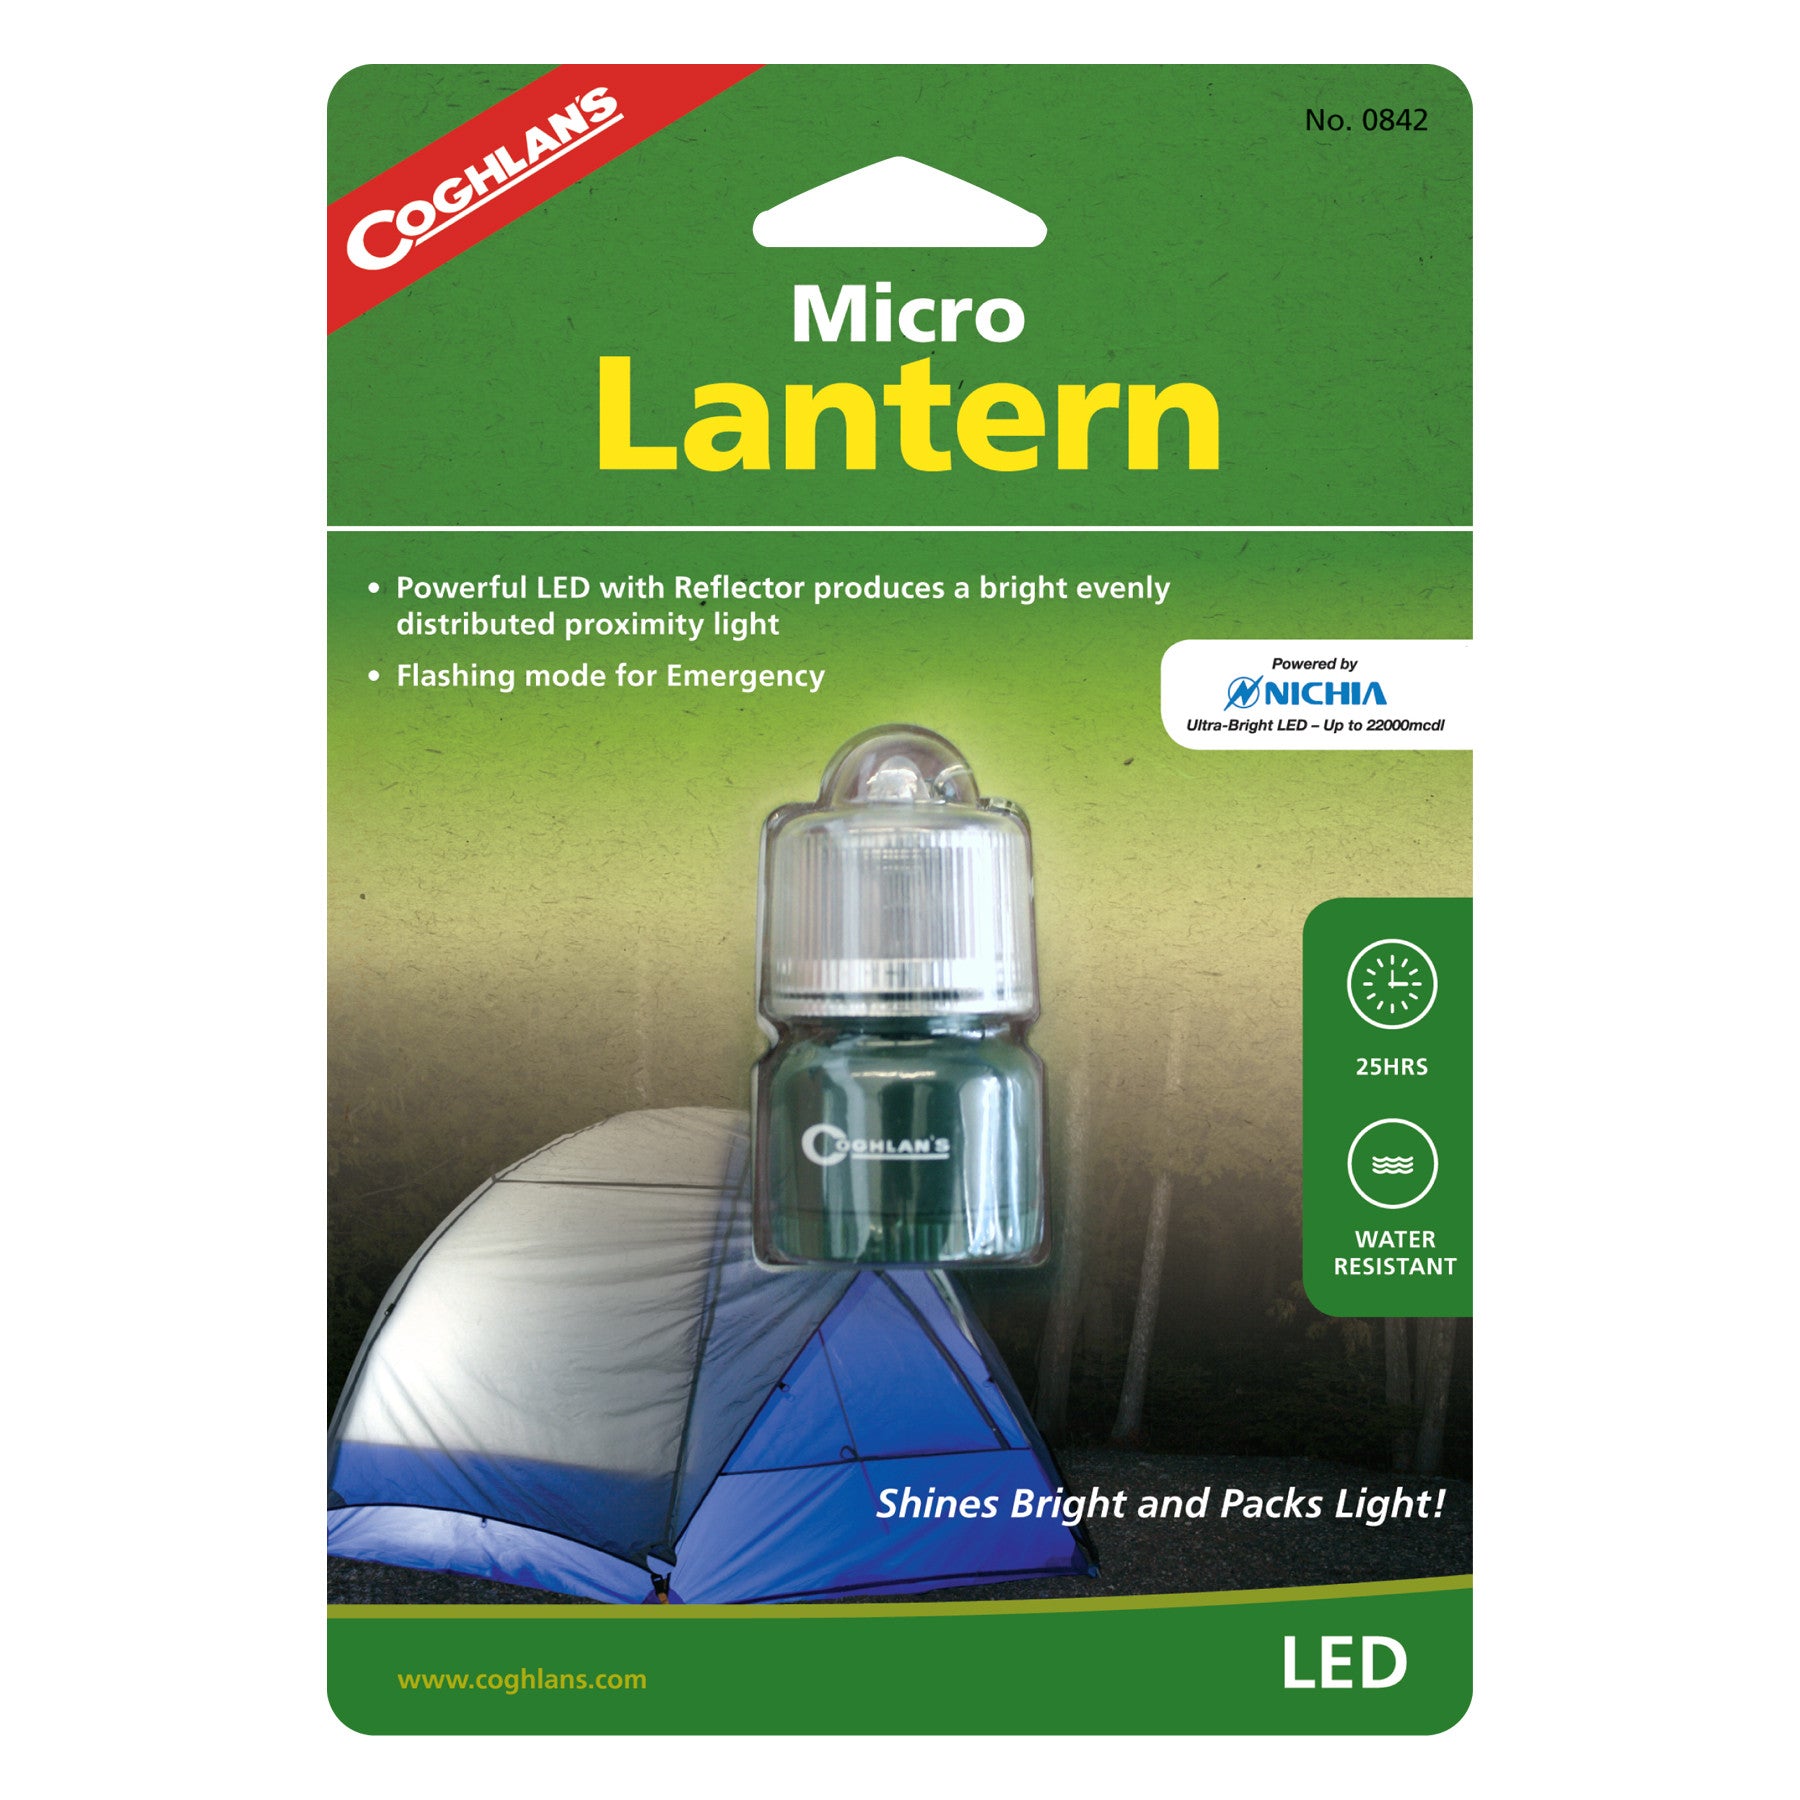 Coghlan's Micro Lantern LED